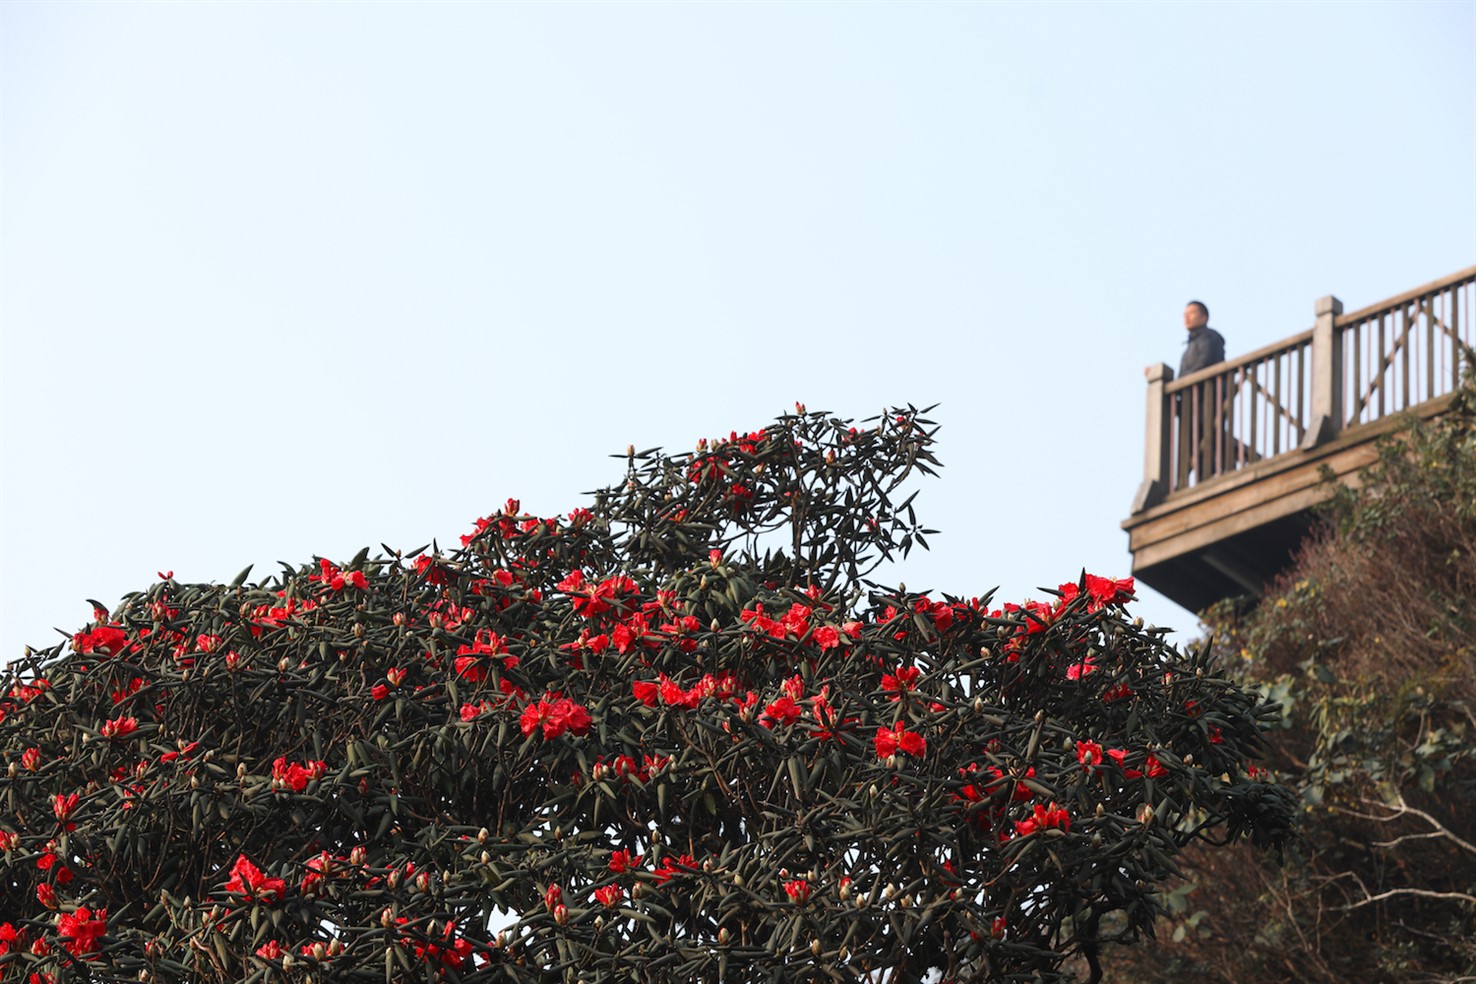 Khi tháng 4 về, những bông loa kèn trắng ngần ngợp đầy các con phố Hà Nội, cũng là lúc từng vạt rừng Hoàng Liên, Sa Pa rực lên sắc đỏ của loài hoa đỗ quyên quý hiếm.